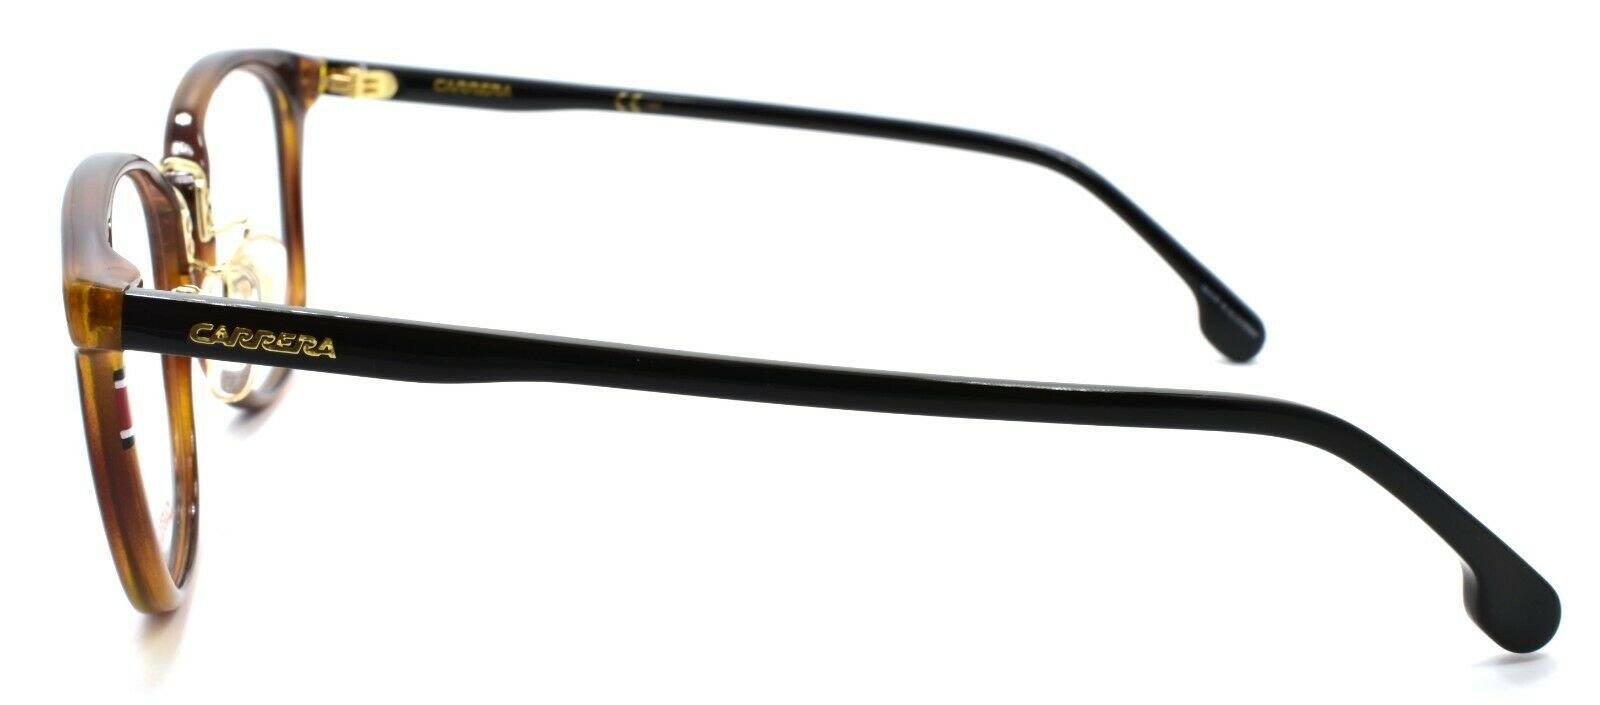 3-Carrera 178/F 086 Eyeglasses Frames 50-20-145 Dark Havana-716736094649-IKSpecs